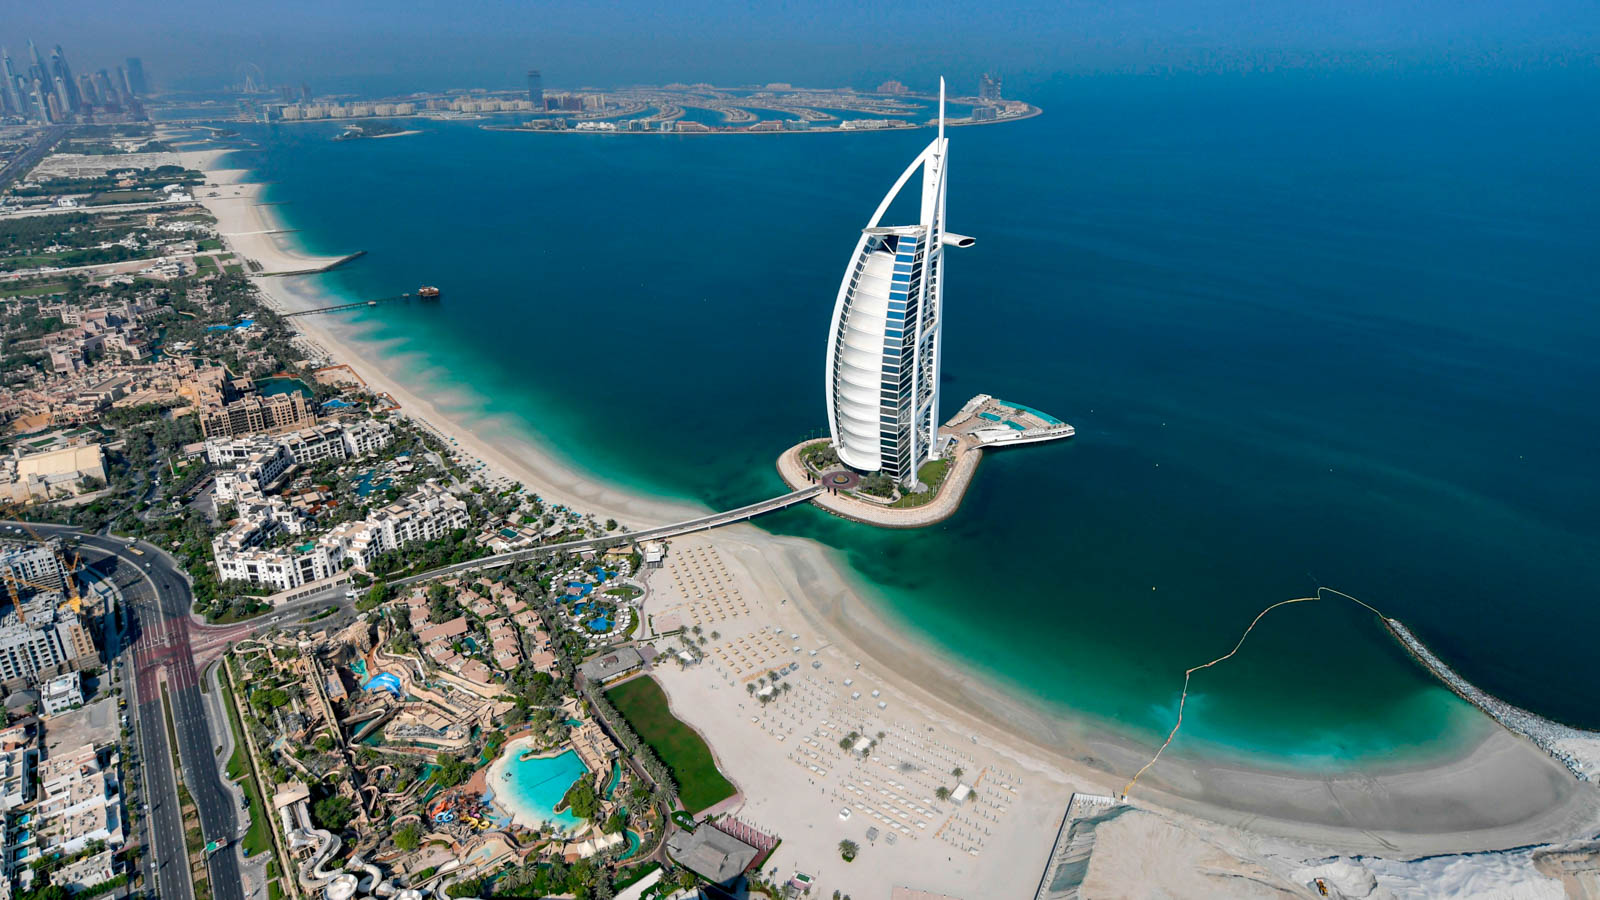 Du lịch Dubai: Cẩm nang từ A đến Z - iVIVU.com